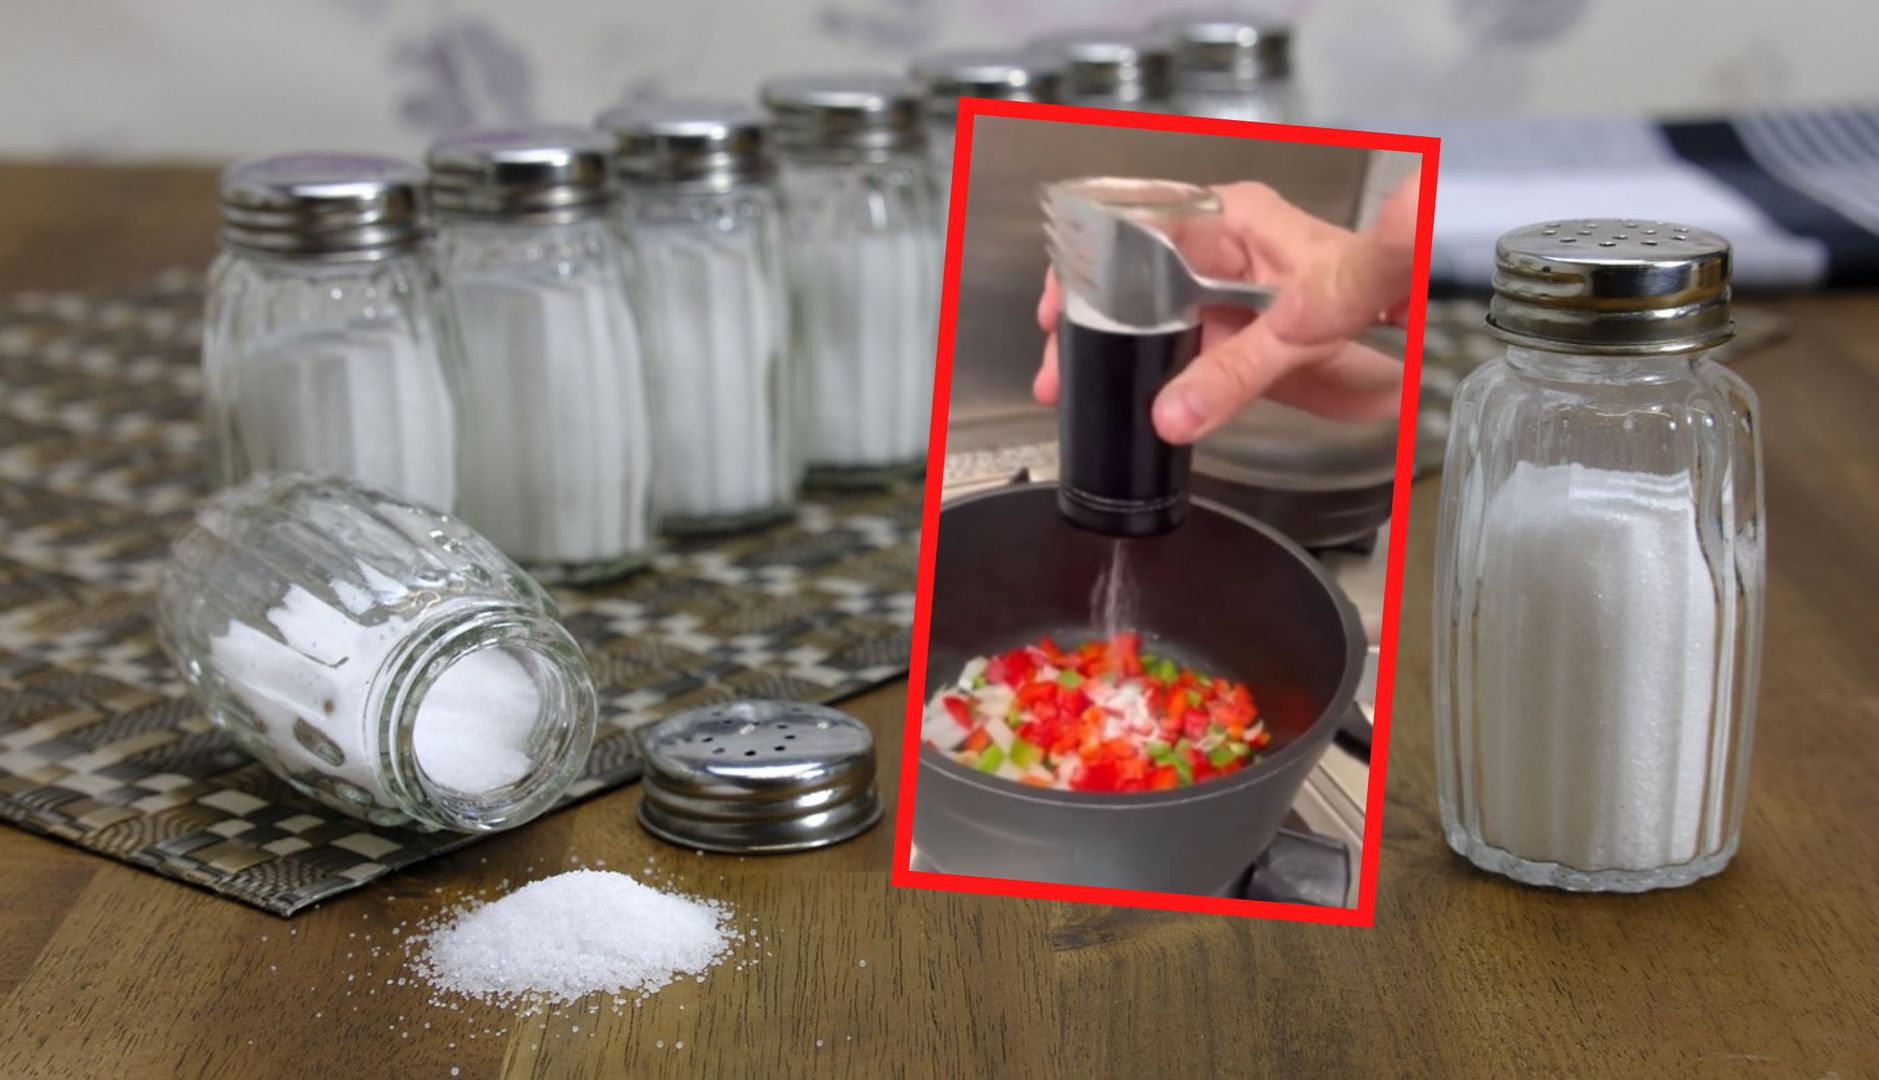 Prawie każdy źle używa solniczki? "Genialny trik" szefa kuchni